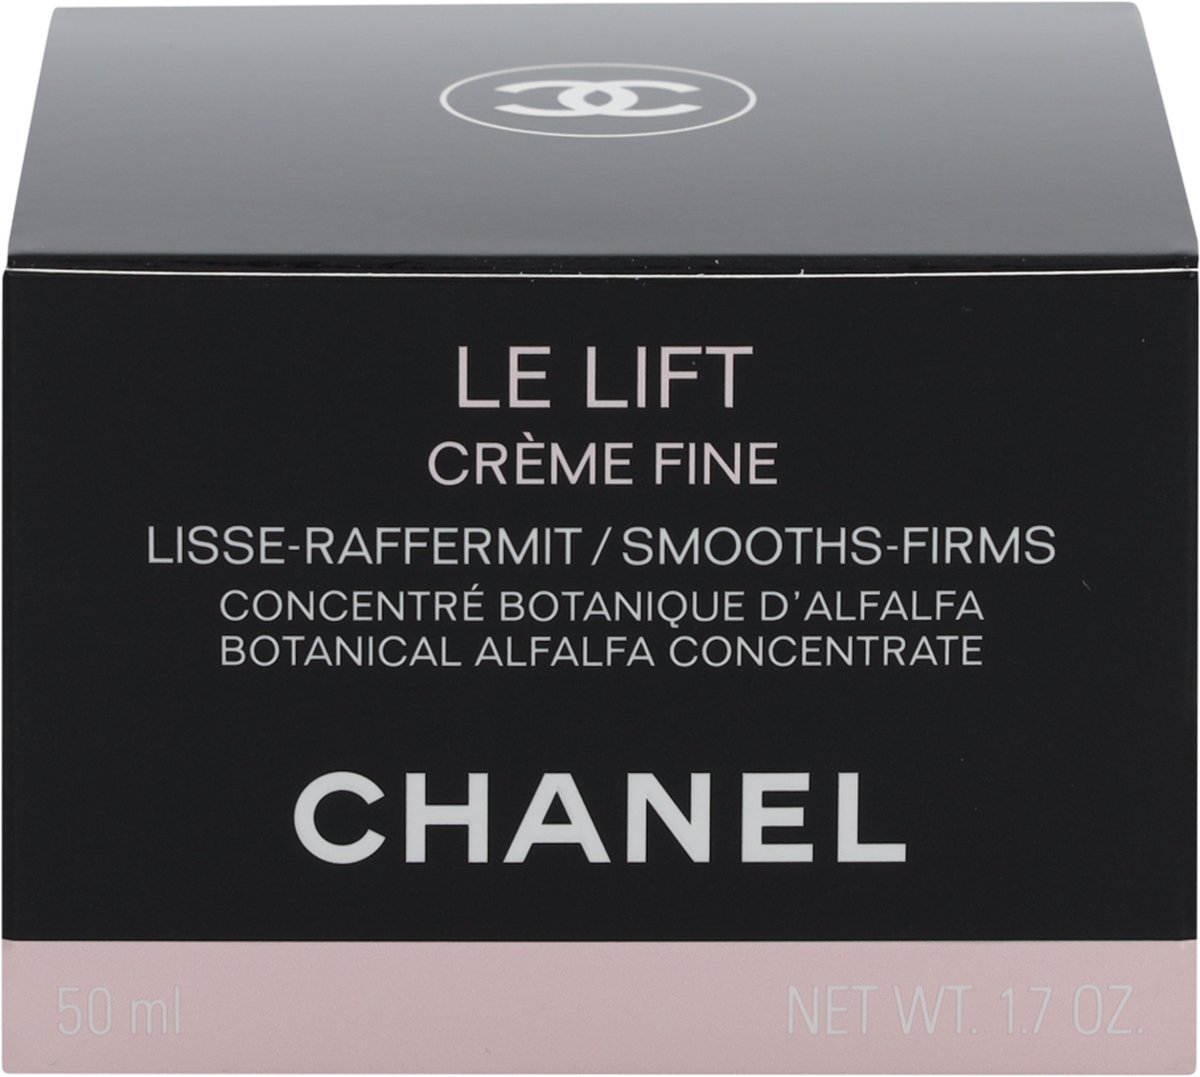 Chanel LE LIFT CREME FINE Cream 1.7oz/50ml